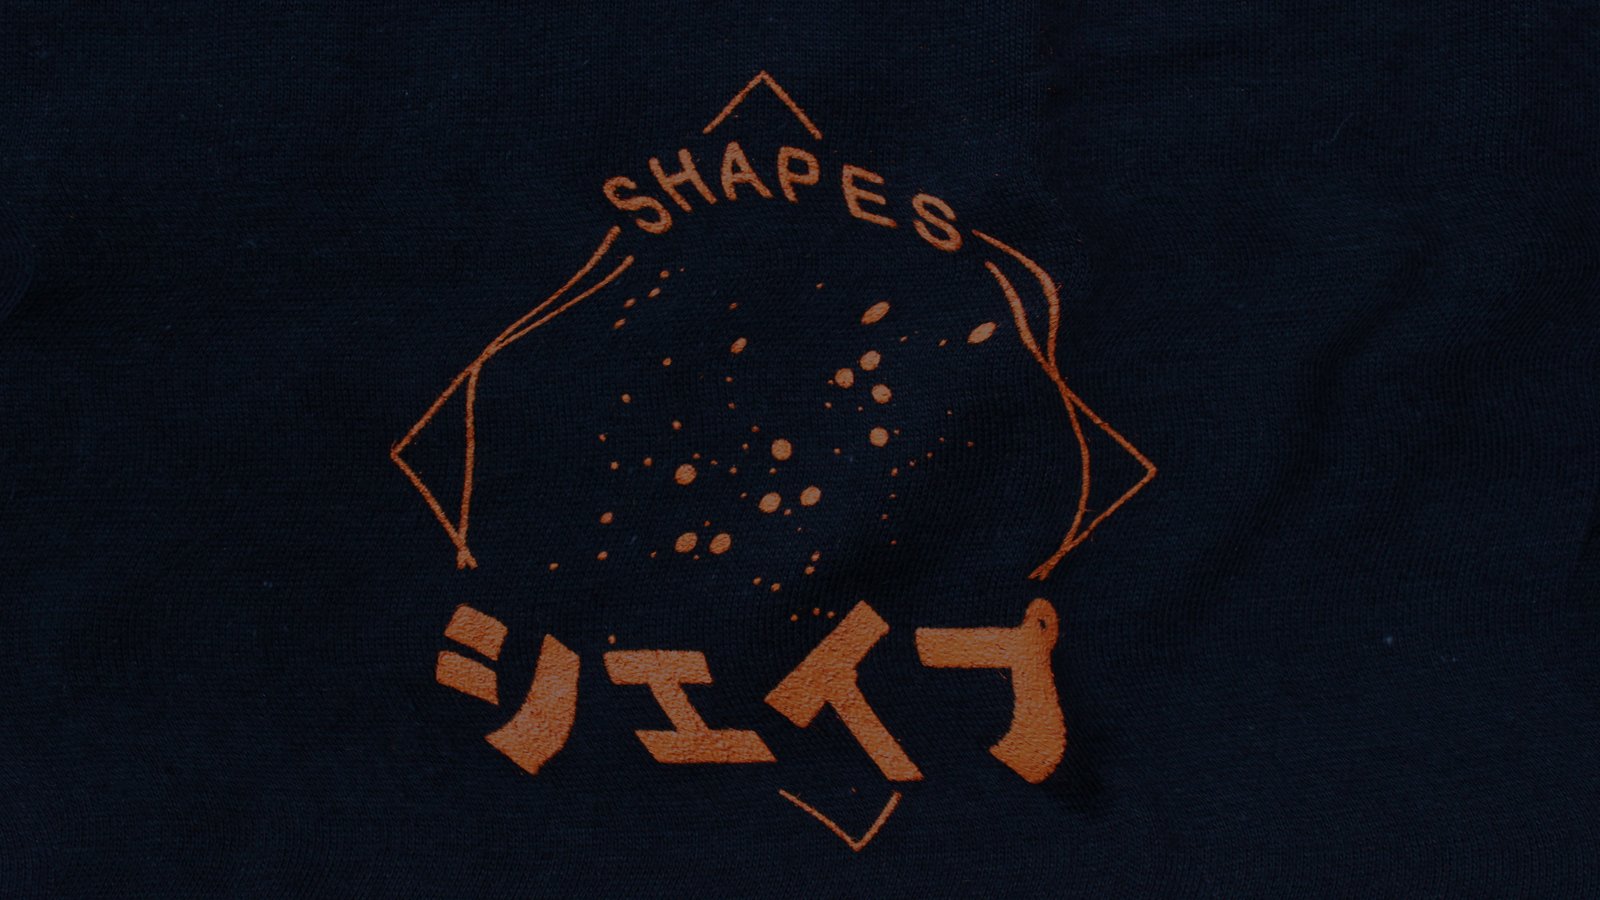 Shapes SHPS Apparel & Urban Culture